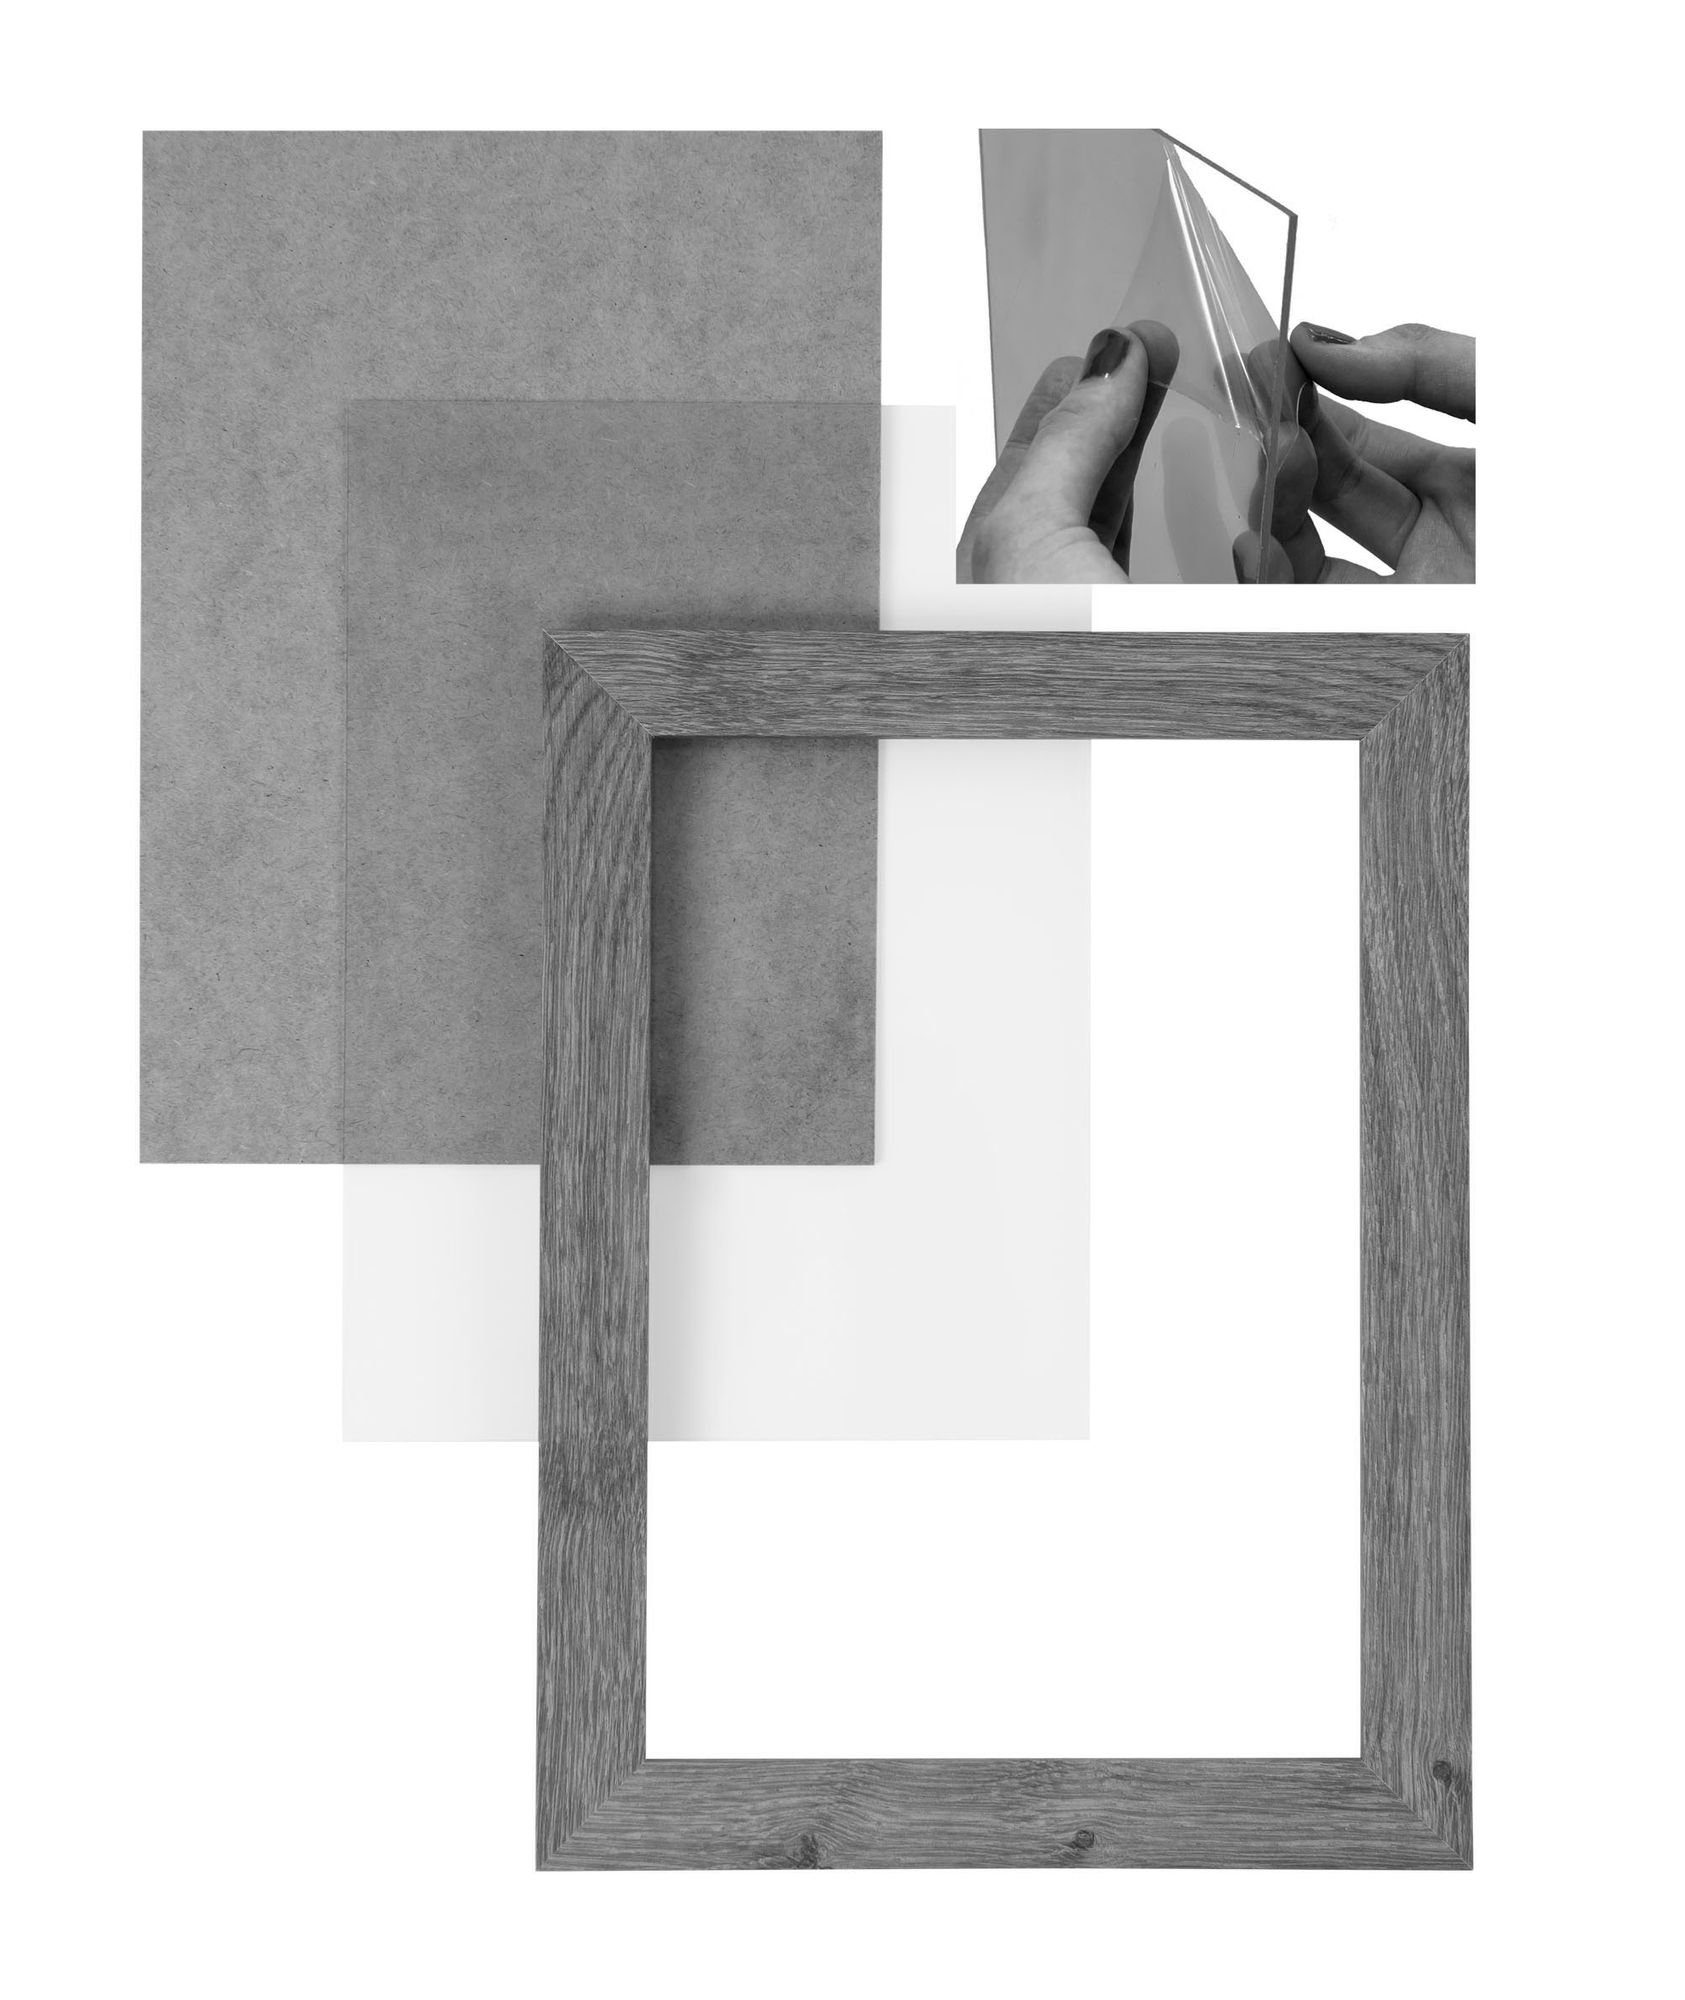 80x90 Rückwand handgefertigt CLAMARO Clamaro nach MDF 'Collage' Bilderrahmen sonama Maß FSC® Bilderrahmen Acrylglas, eckiger und inkl. Aufhänger in eiche Holz Moderner Rahmen